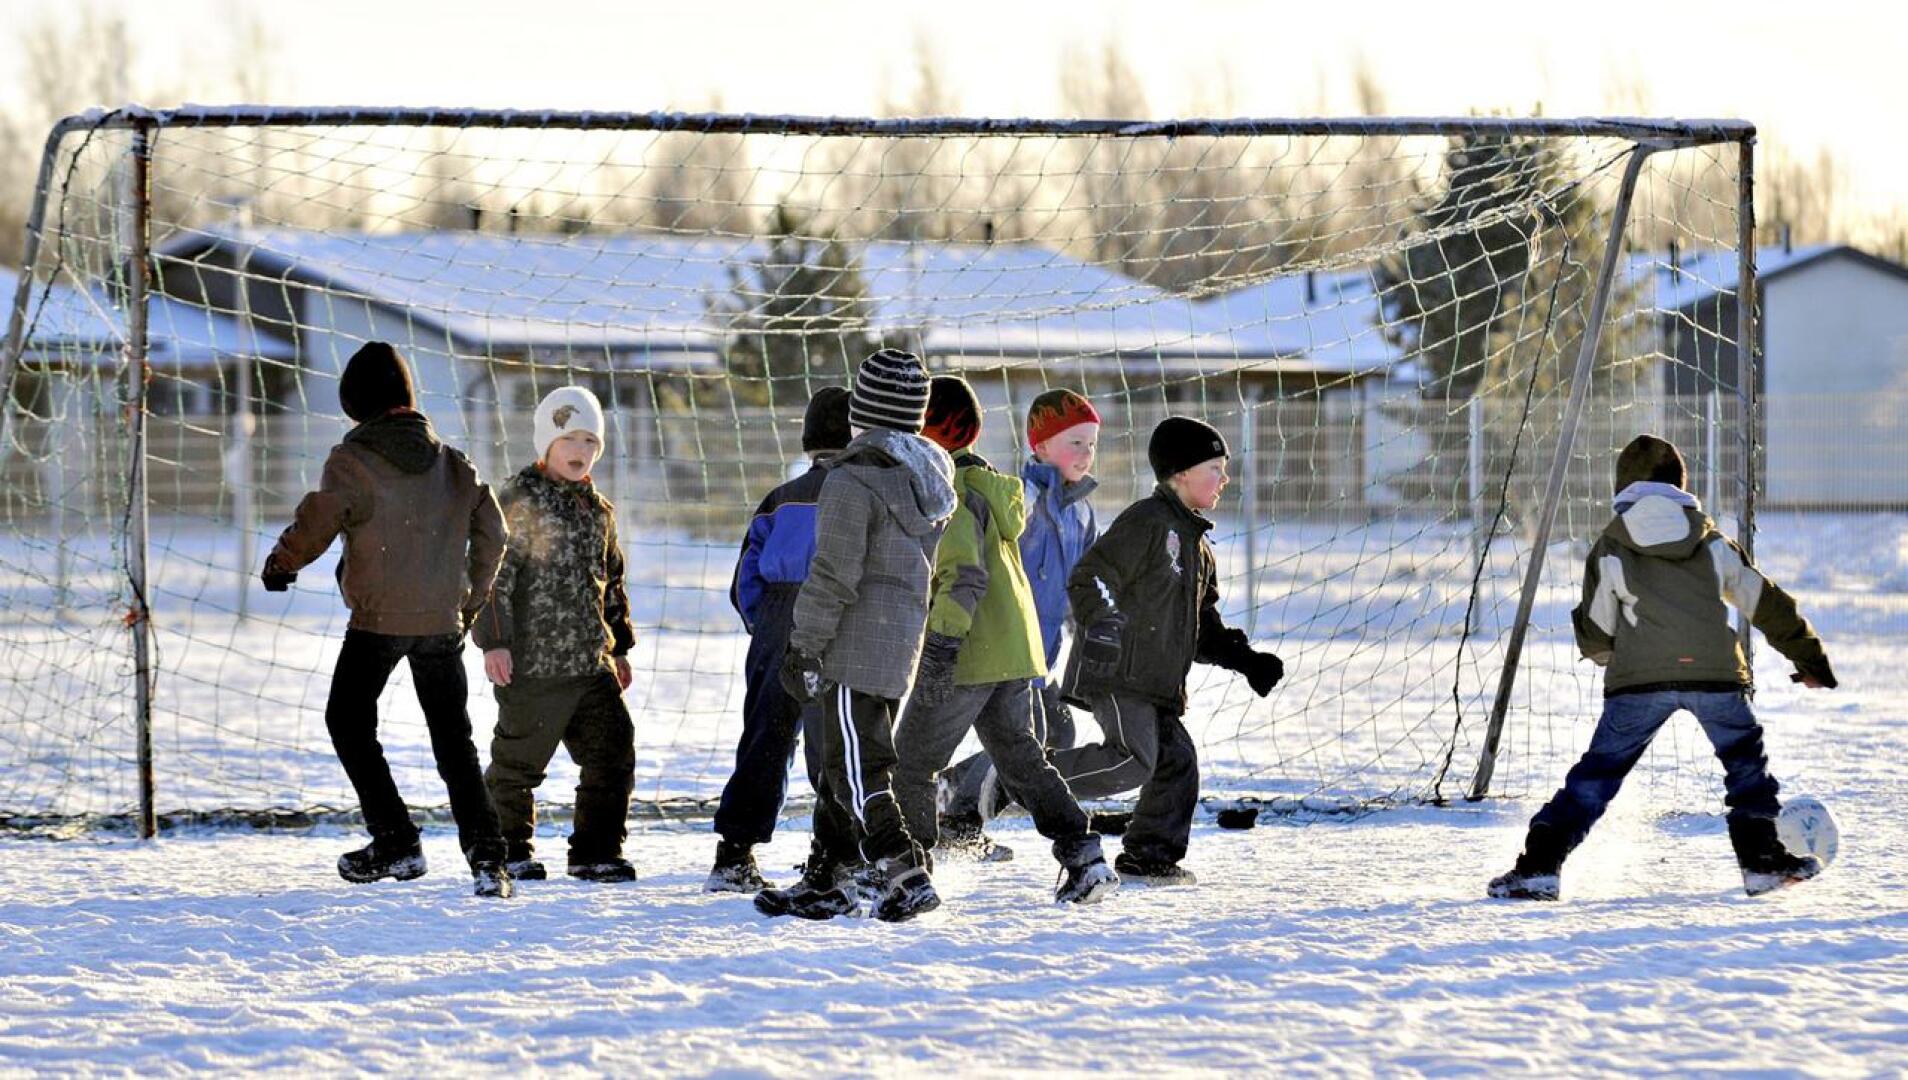 Atte Ohtamaan stipendirahasto tukee lasten ja nuorten liikuntaharrastusta. Kuvassa Kyösti Kallion koulun oppilaat liikkumassa välitunnilla.